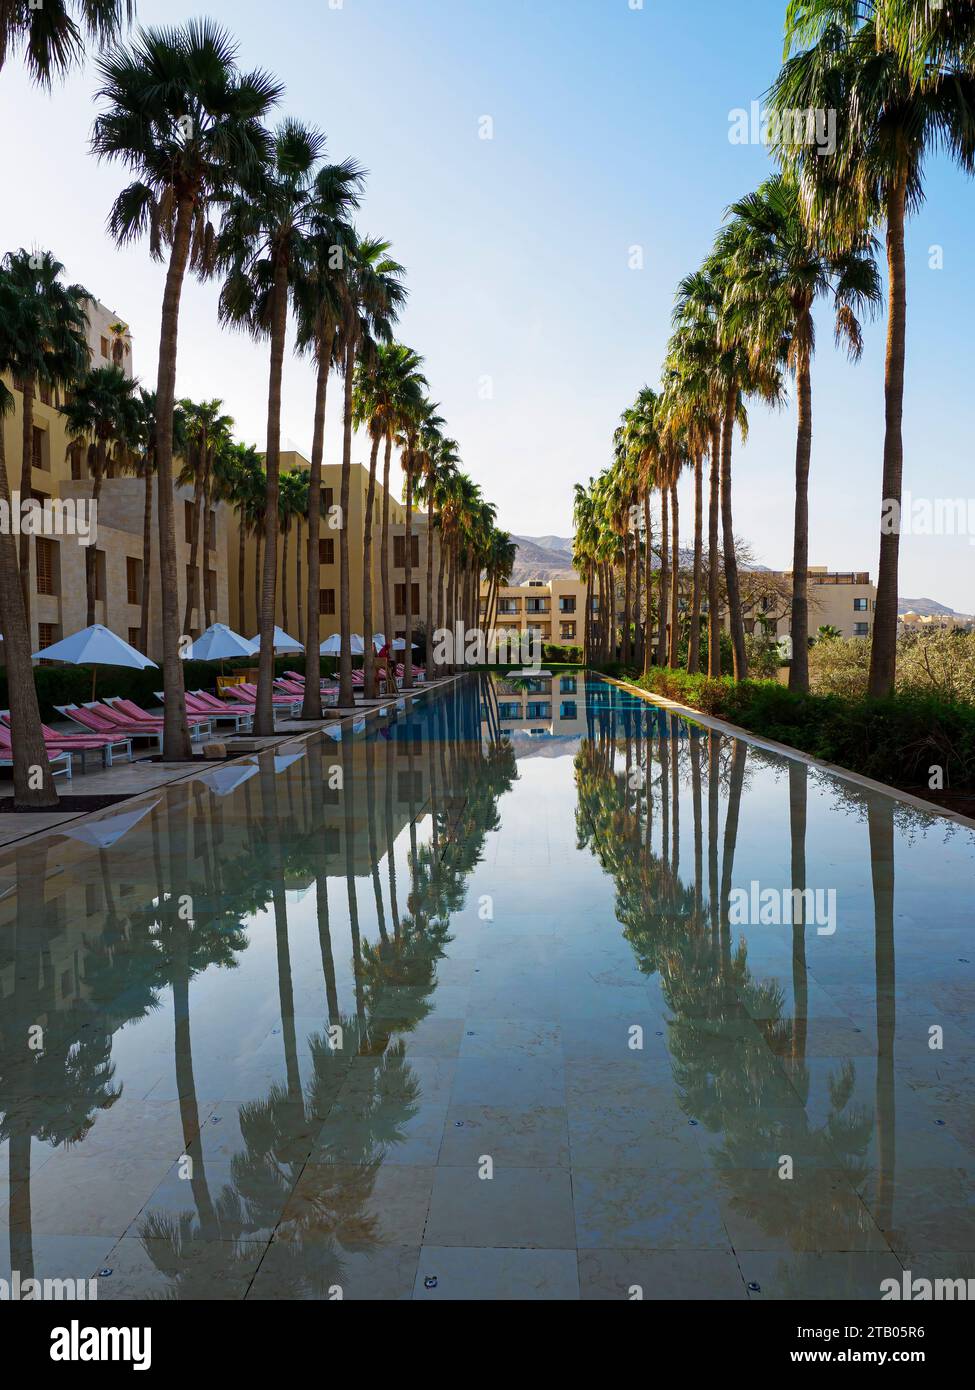 Kempinski Hotel Ishtar, un complexe 5 étoiles de luxe au bord de la mer Morte inspiré des jardins suspendus de Babylone, en Jordanie. Banque D'Images